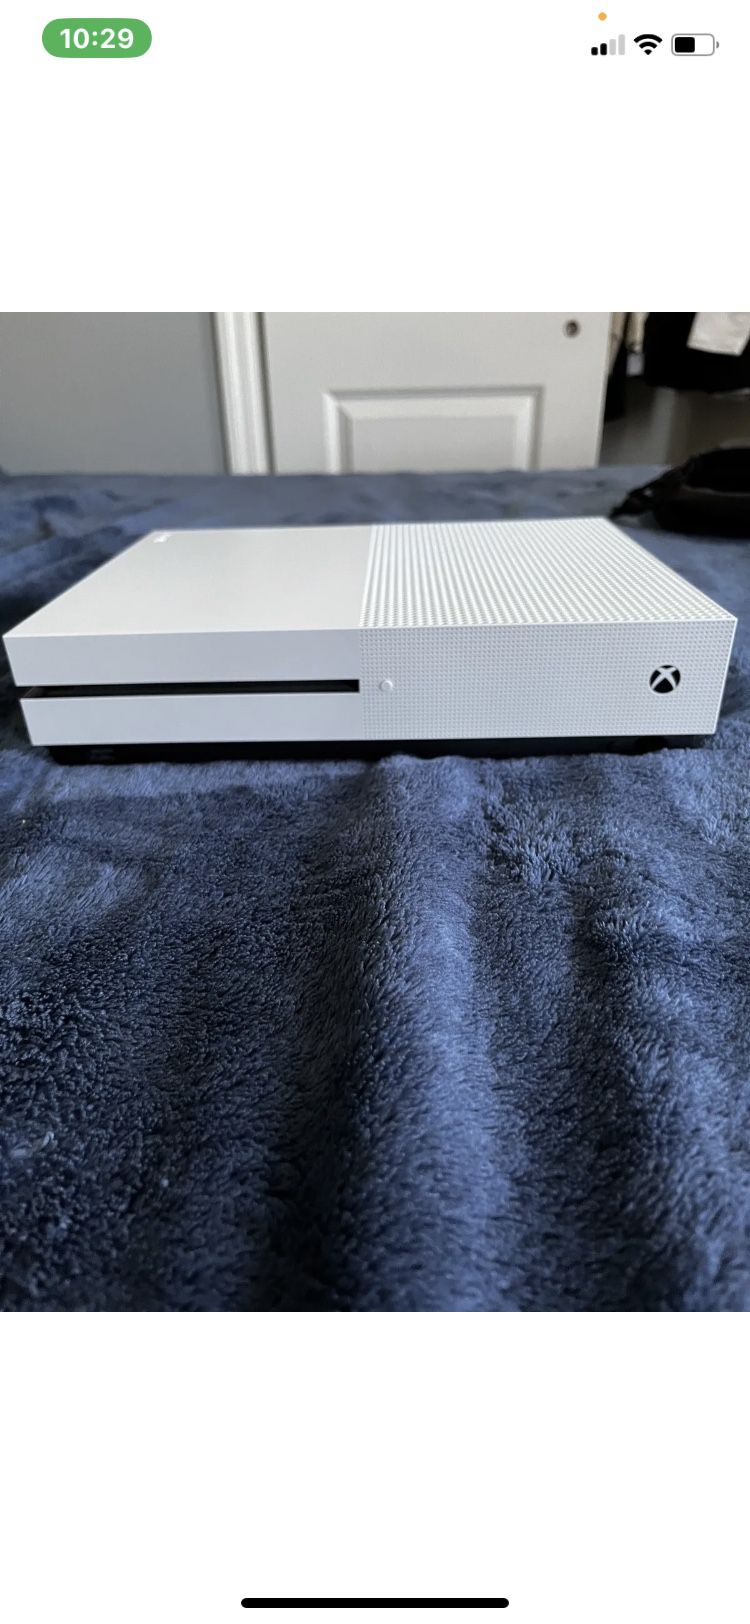 White Xbox One S 